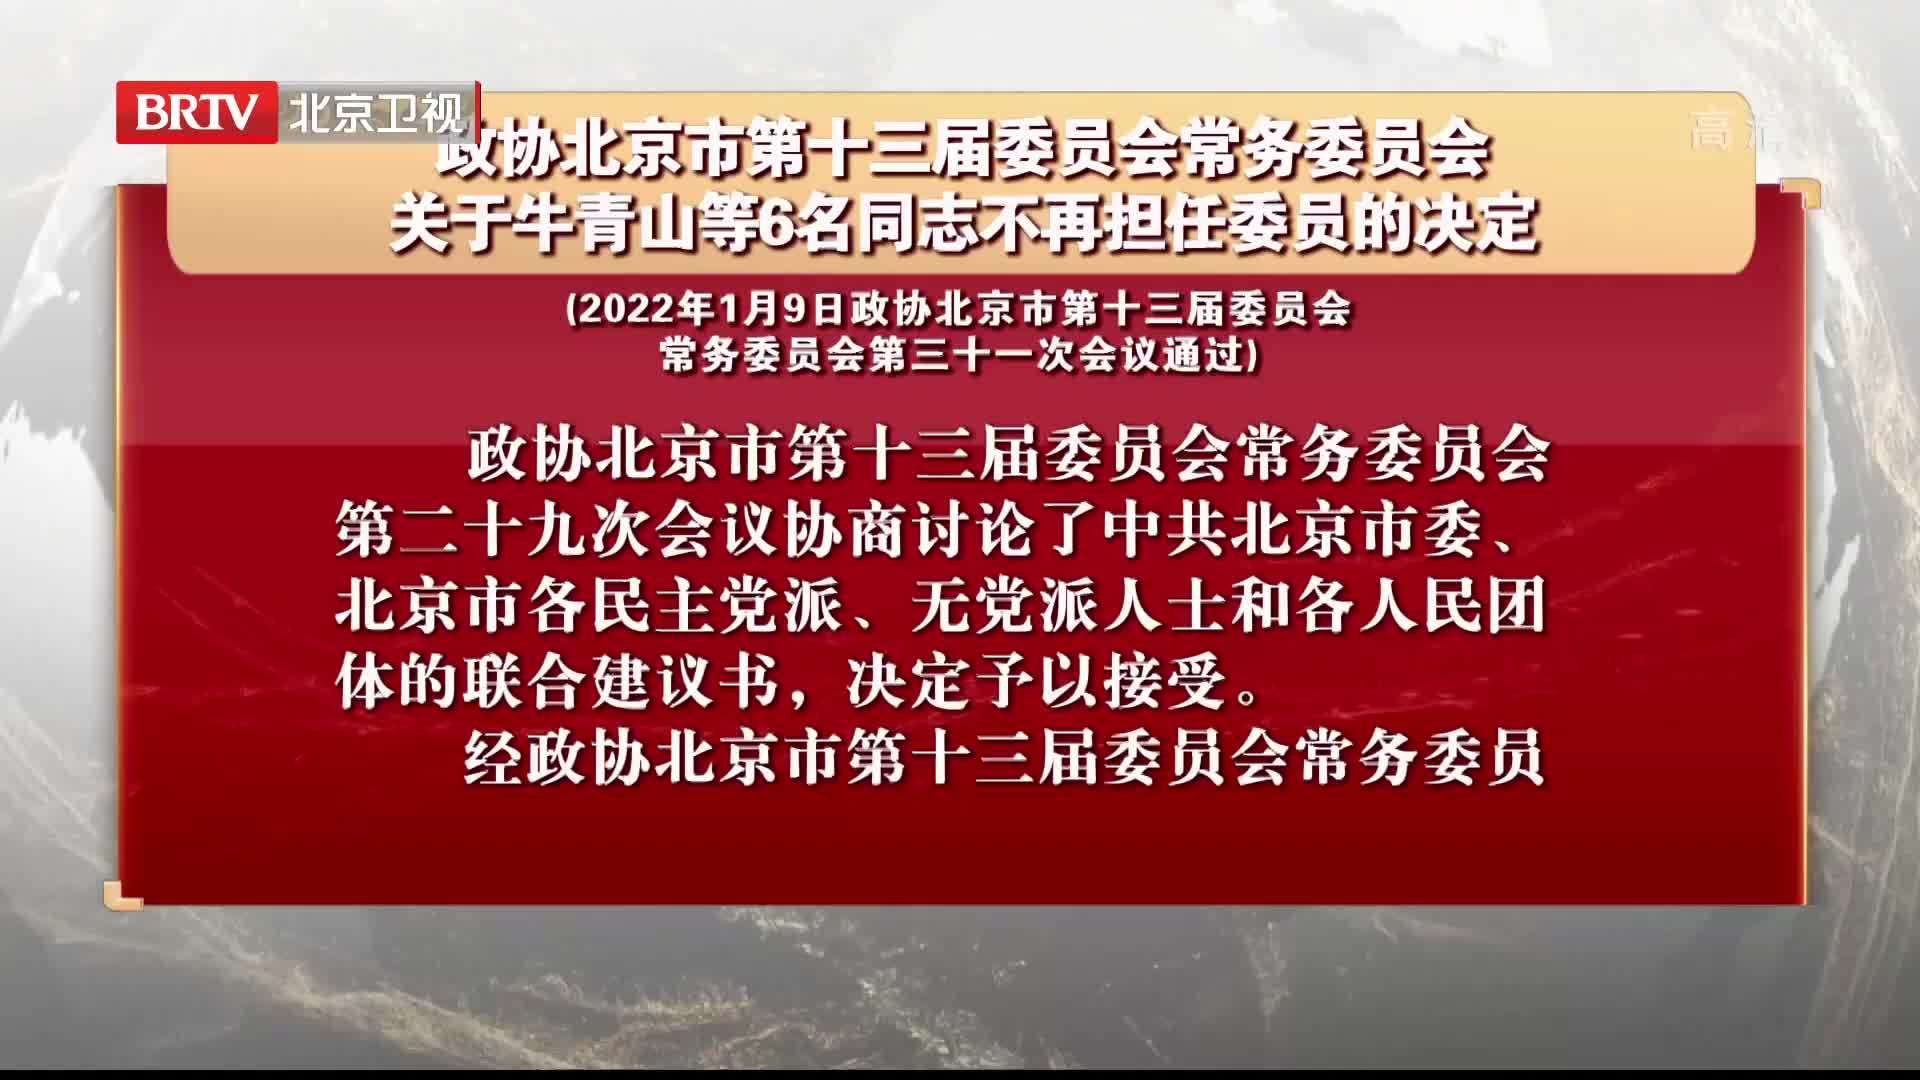 政协北京市第十三届委员会常务委员会关于6名同志不再担任委员的决定